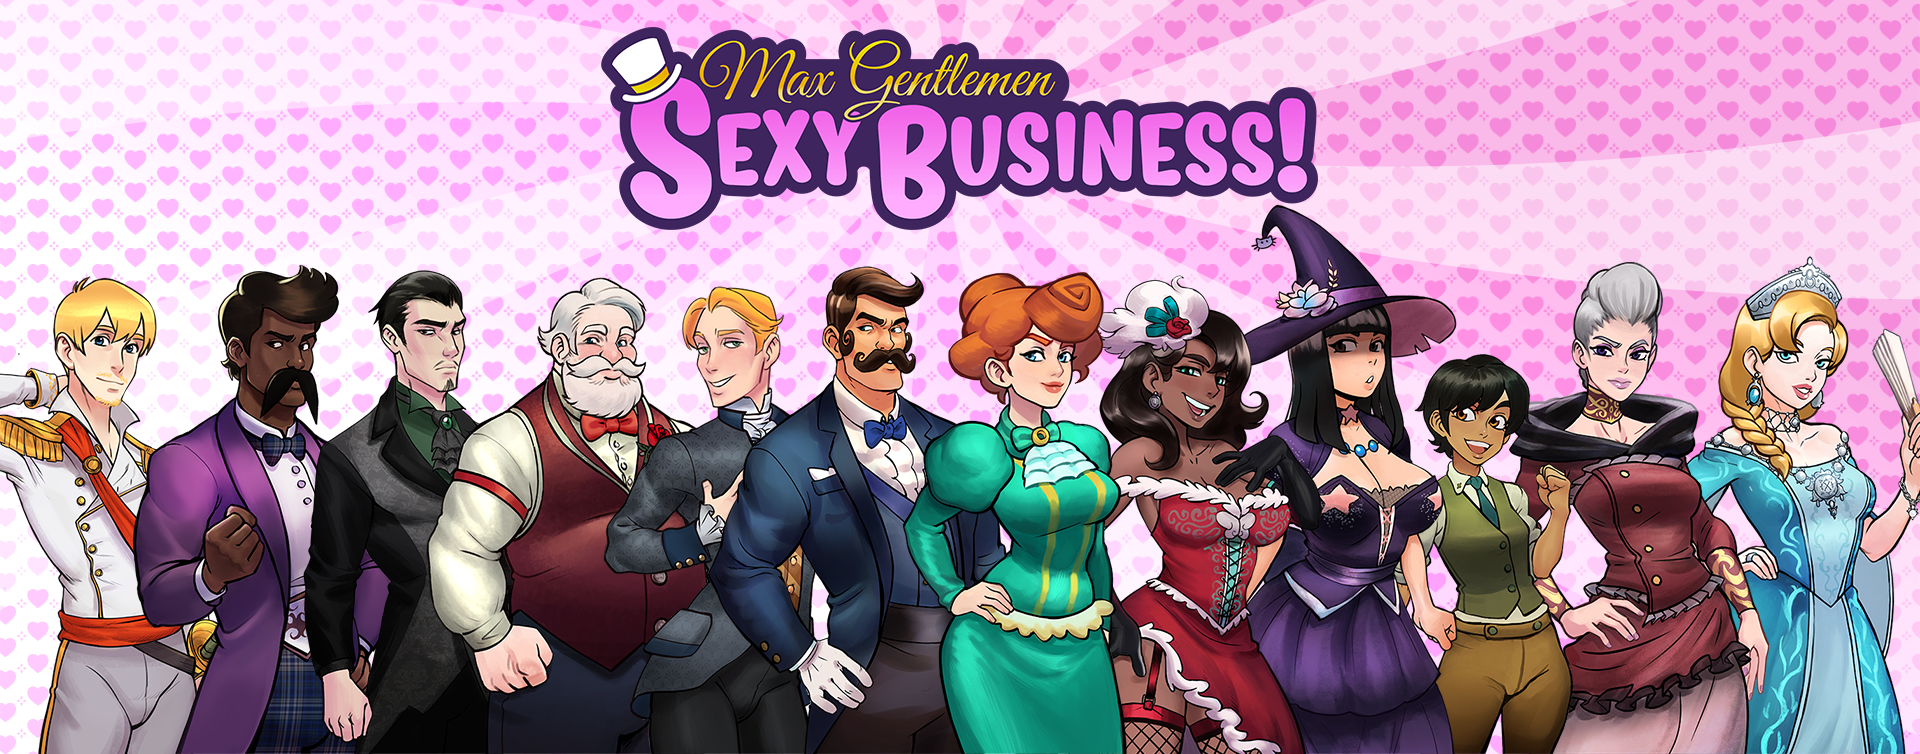 Max Gentlemen Sexy Business! Speed Dating Demo